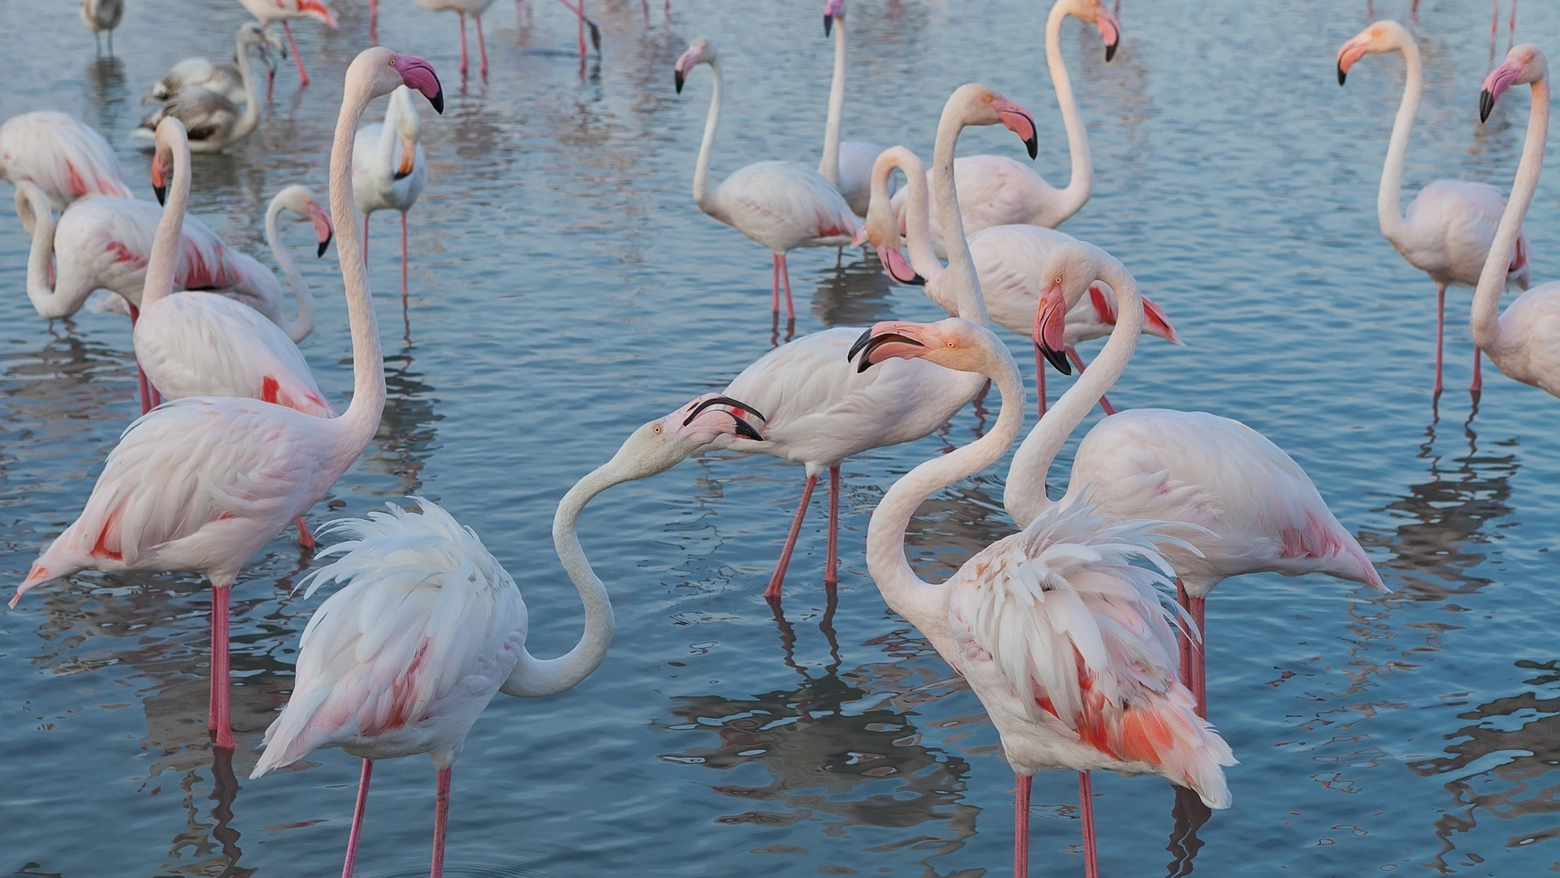 Sale l'attesa per 'Flamingomania' in Maremma (iStock Photo)